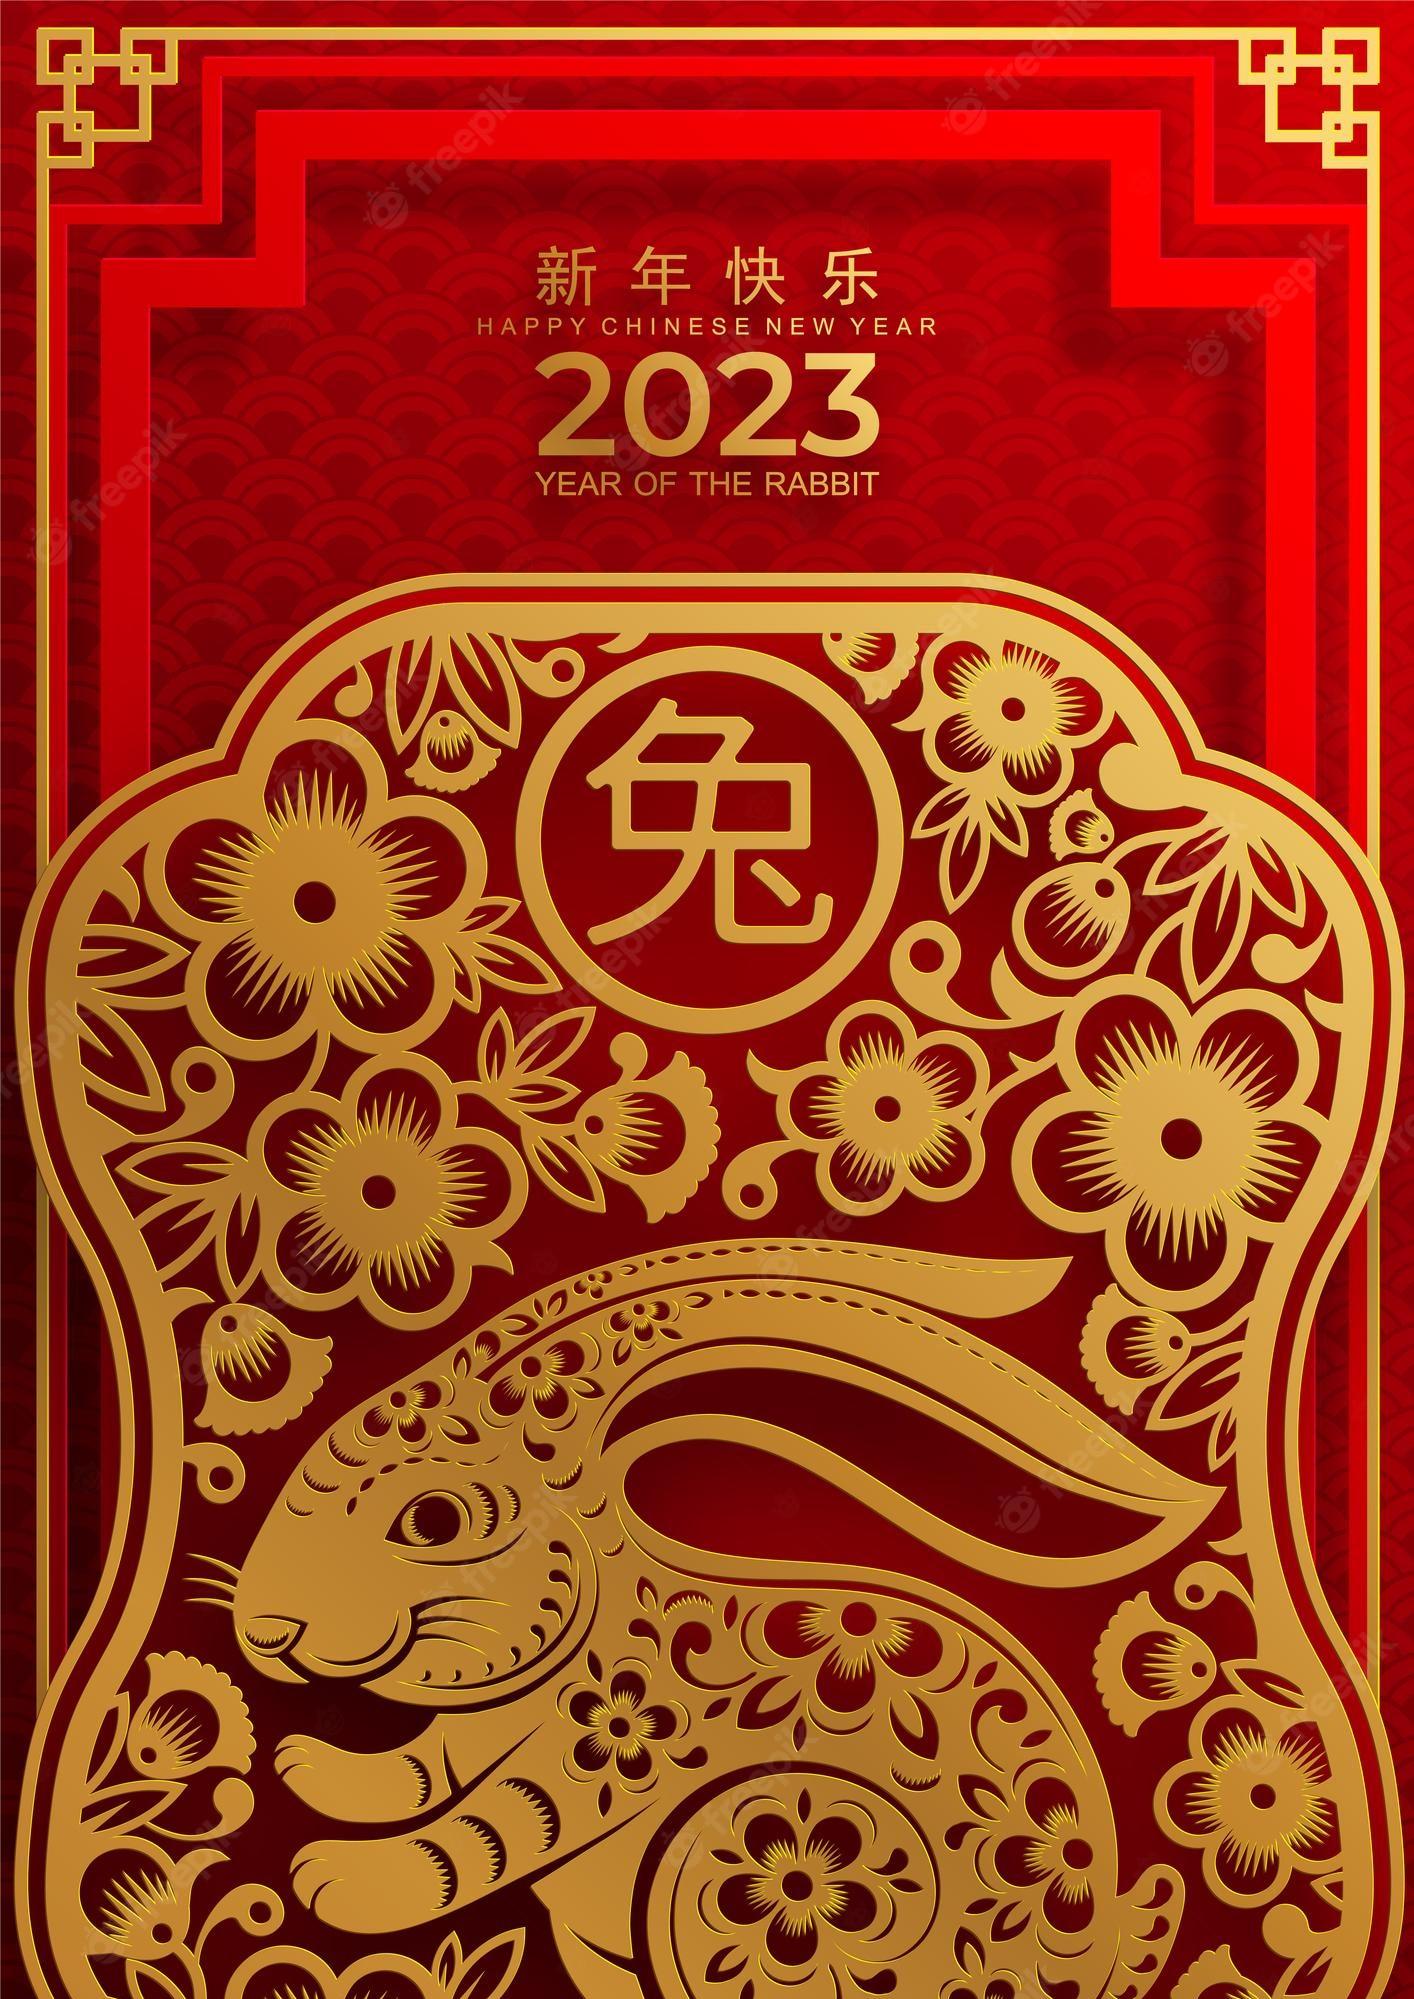 17 Happy Lunar New Year 2023 Wallpapers  WallpaperSafari